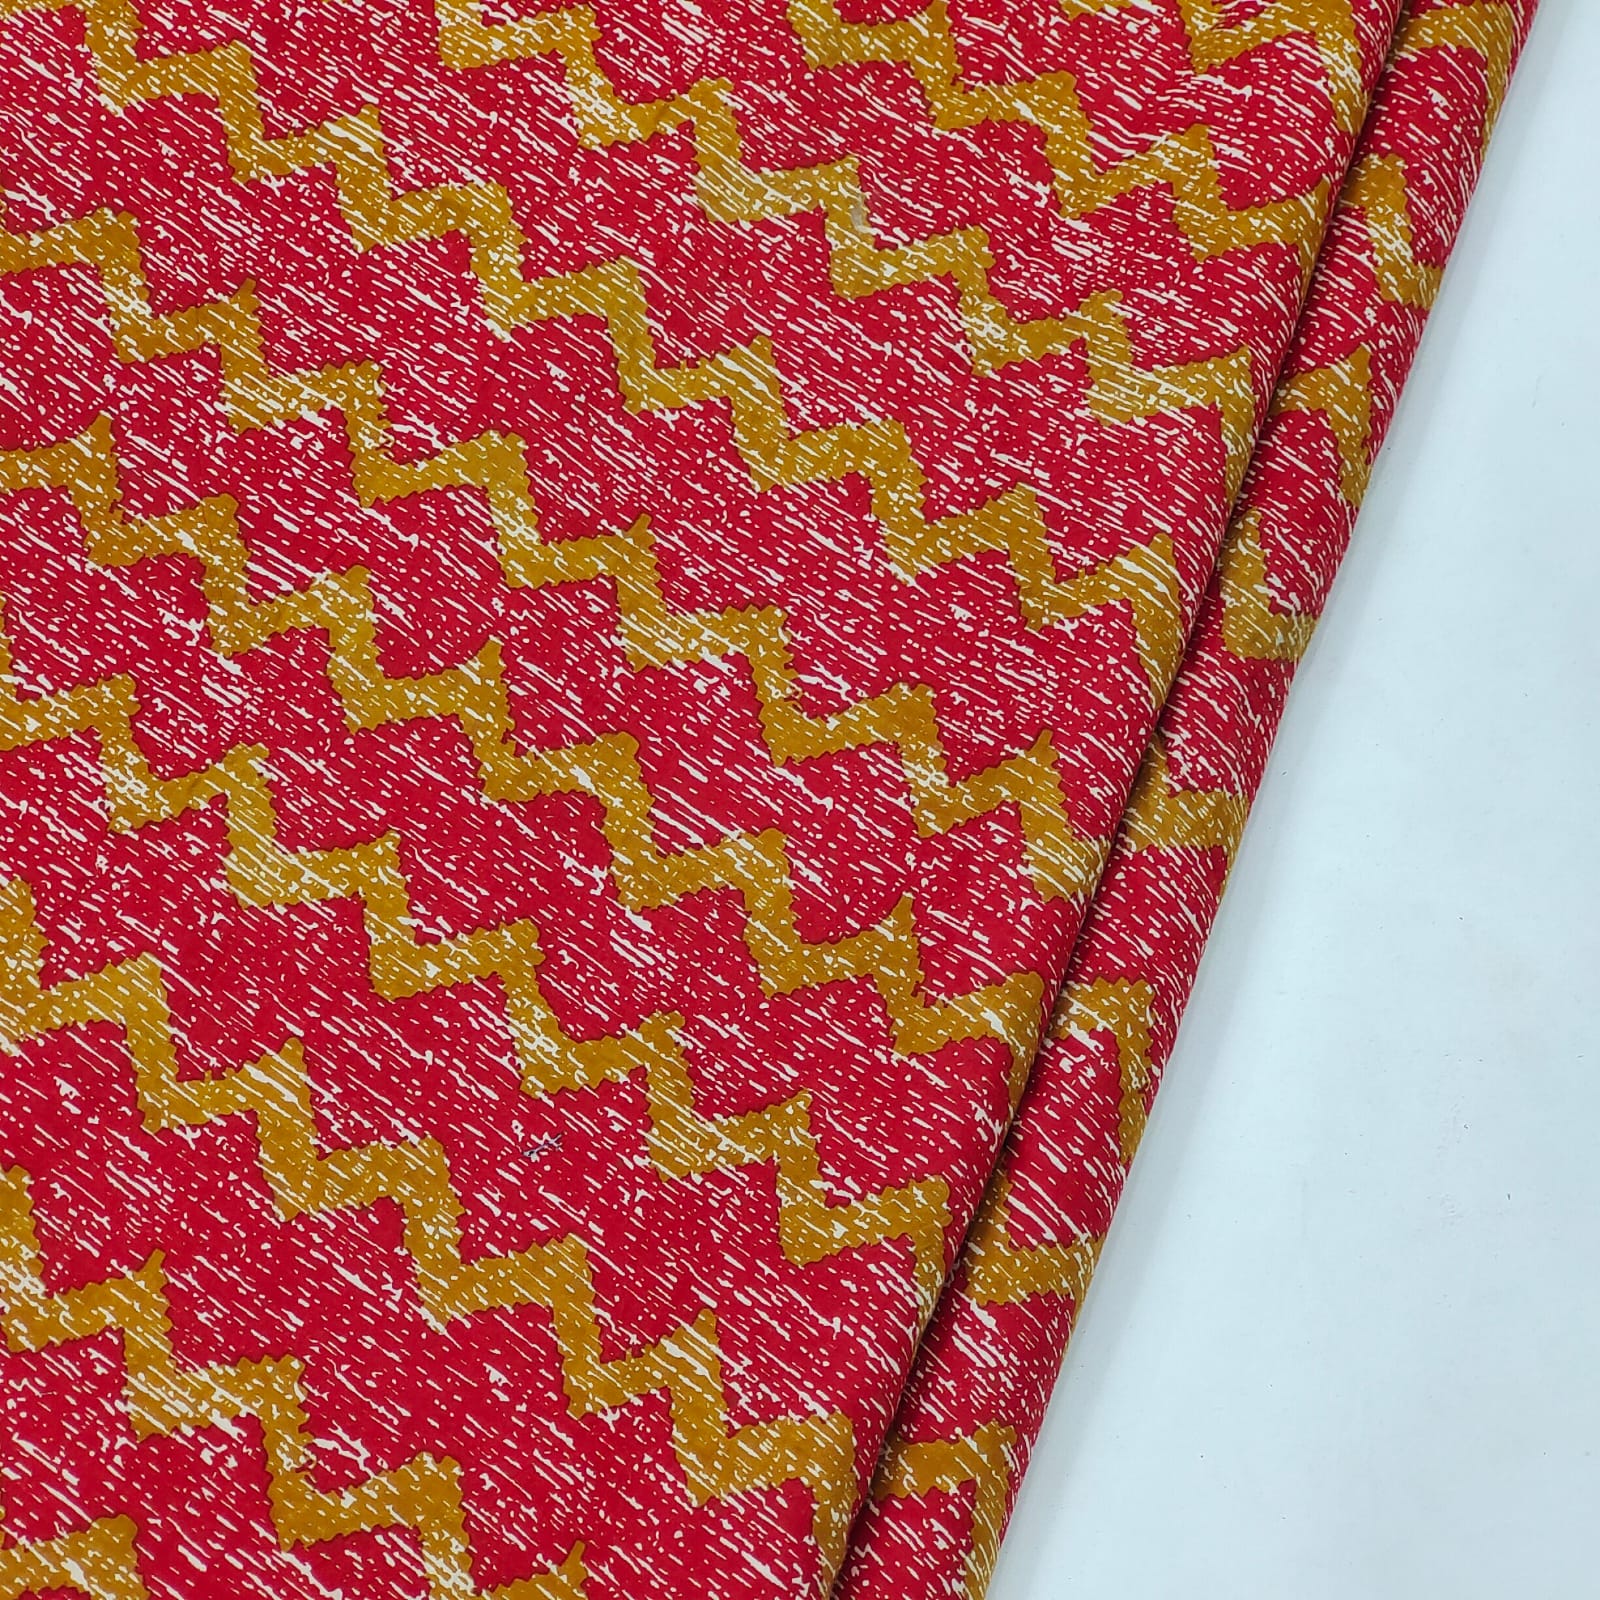 Crimson pure cotton running material set